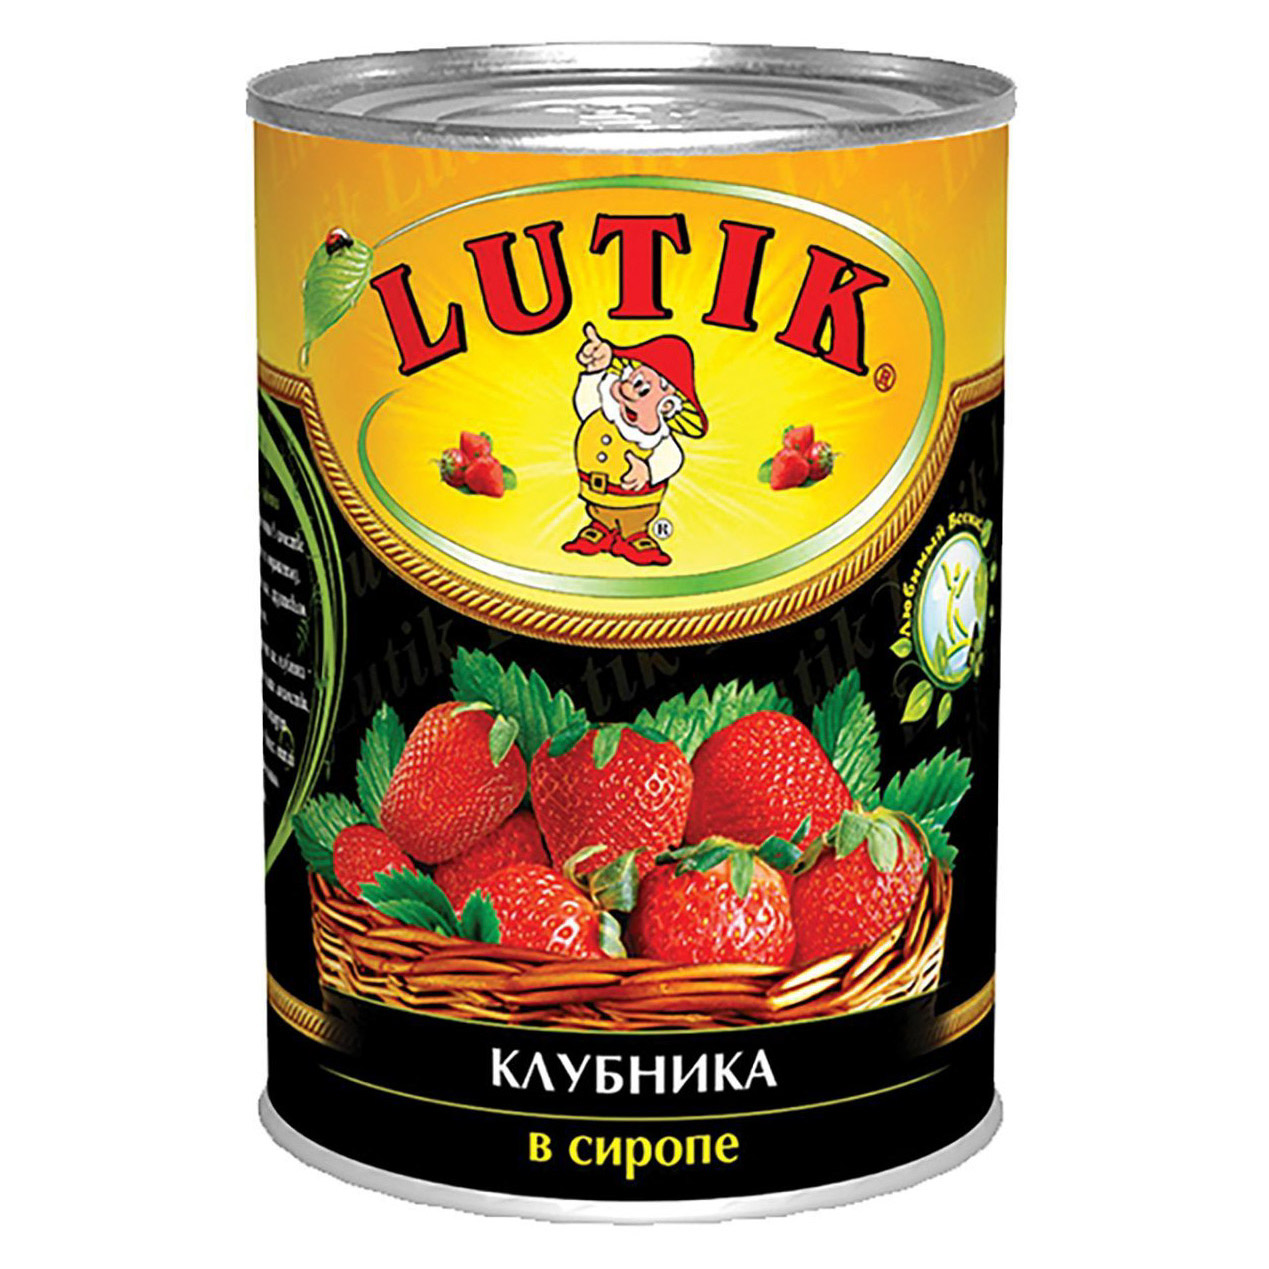 Клубника Lutik в сиропе 425 мл персики lutik очищенные половинкам в сиропе 425мл